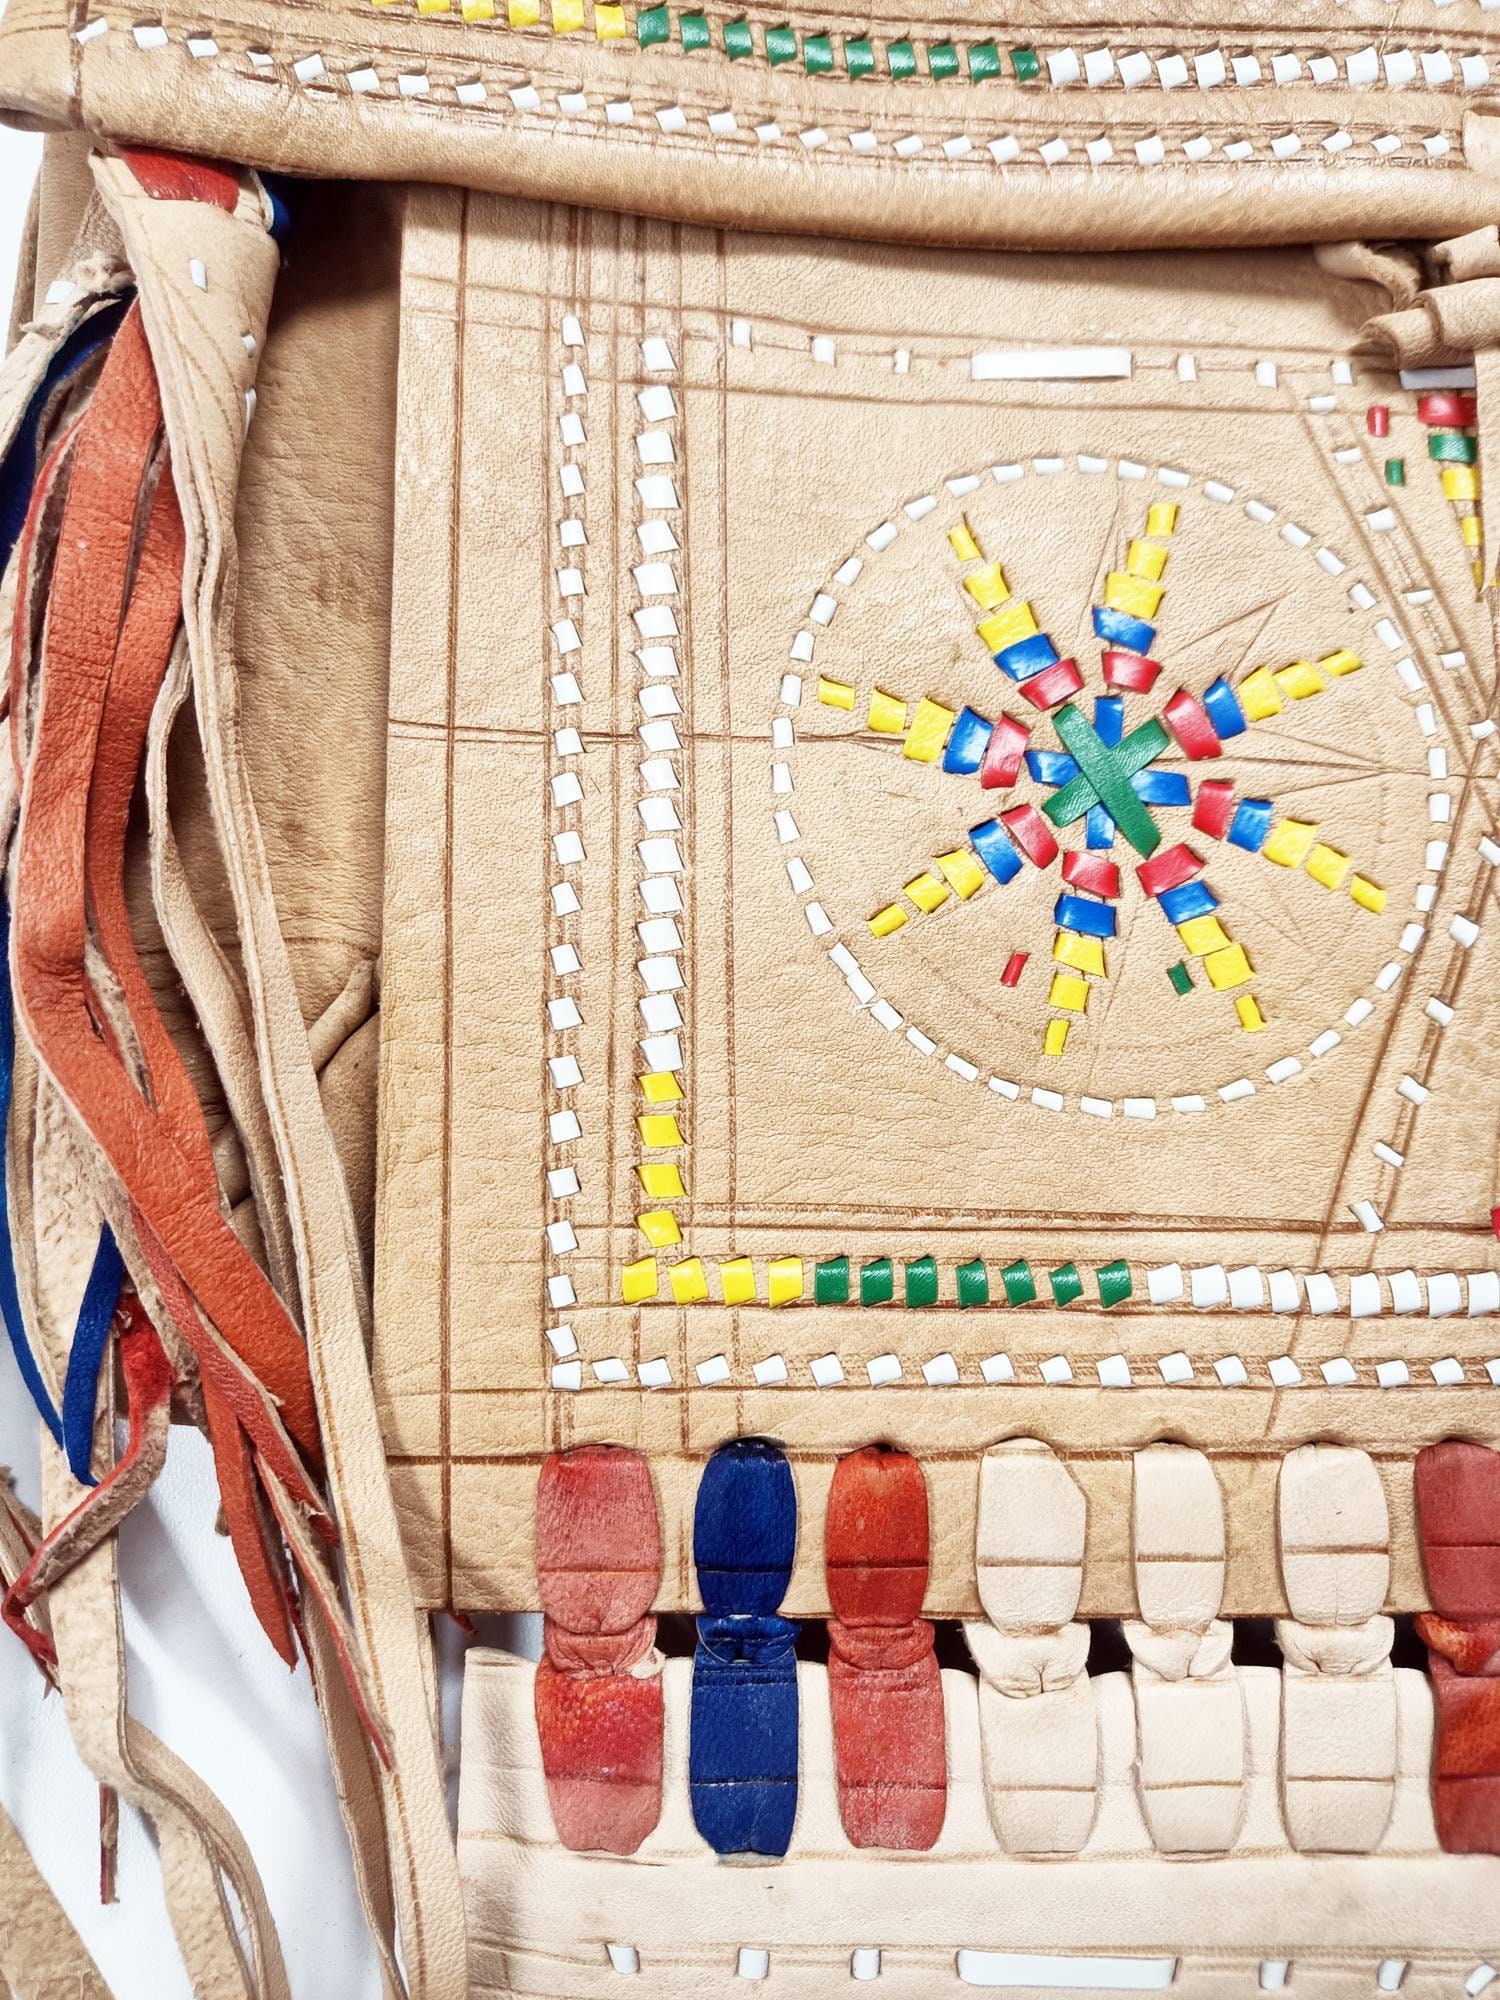 Unique LEATHER TASSEL BAG, Native American Fringe Purse, Vintage